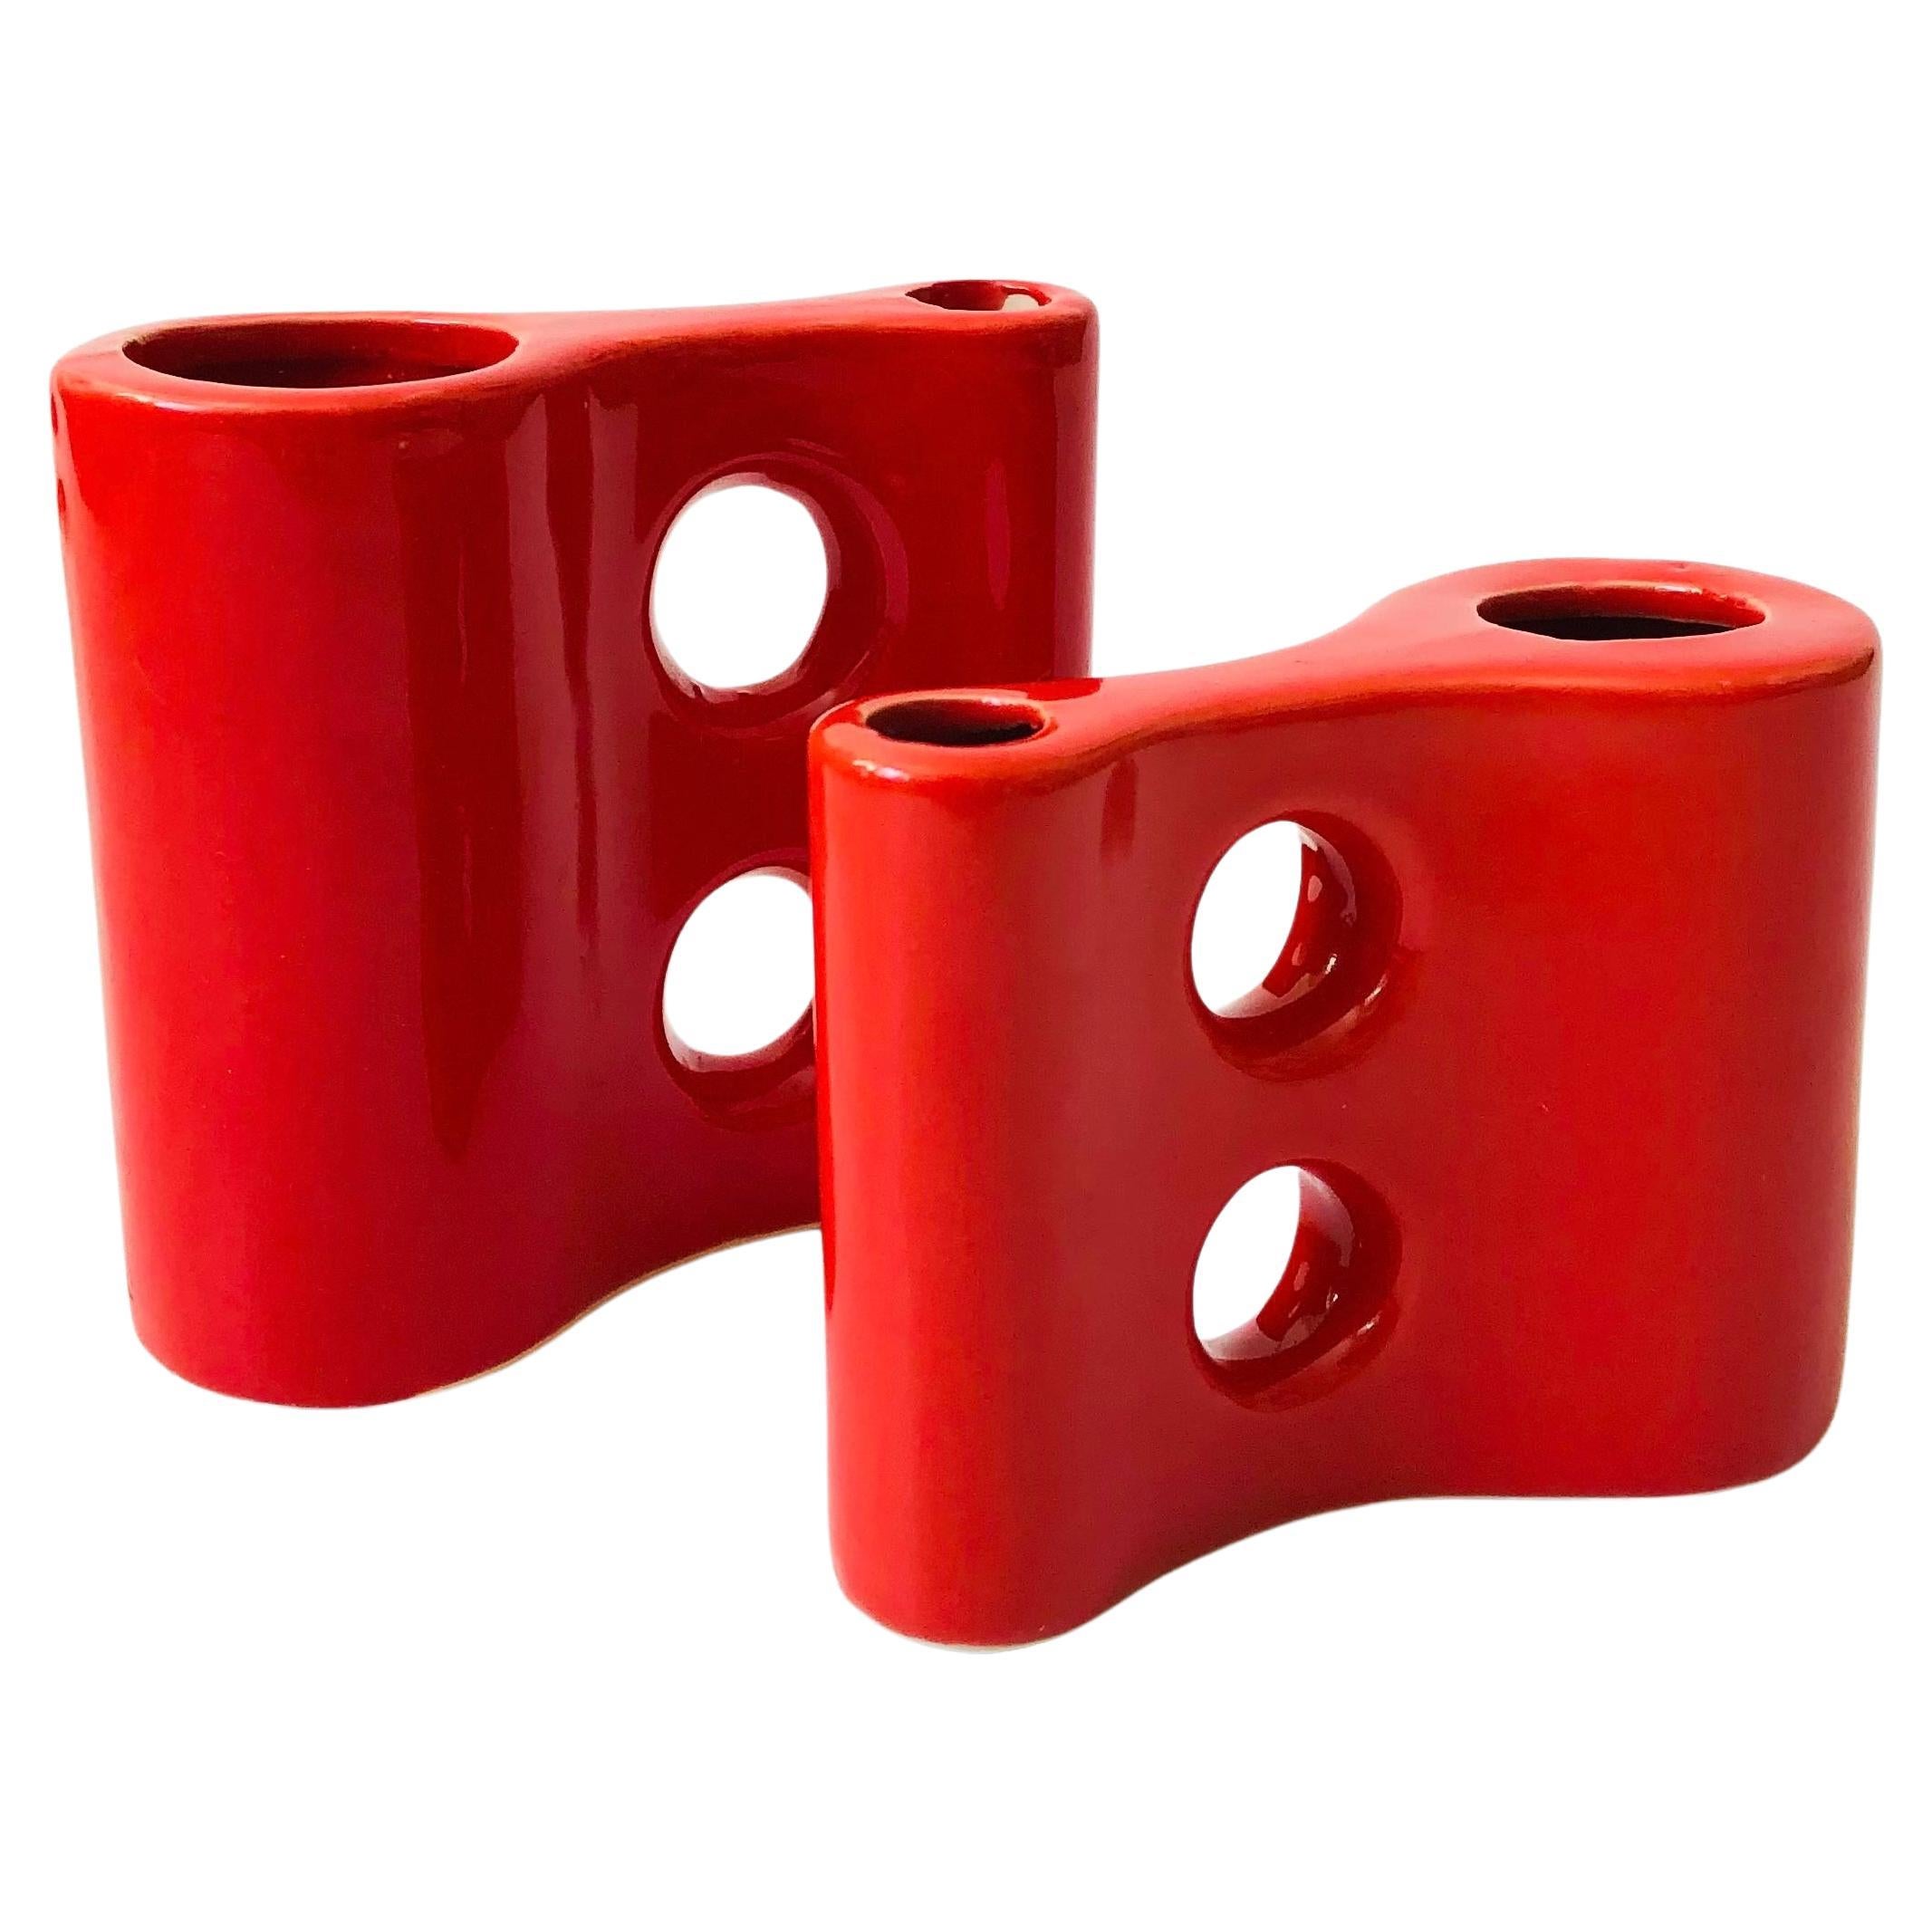 Sculptural Red Ceramic Vases - Set of 2